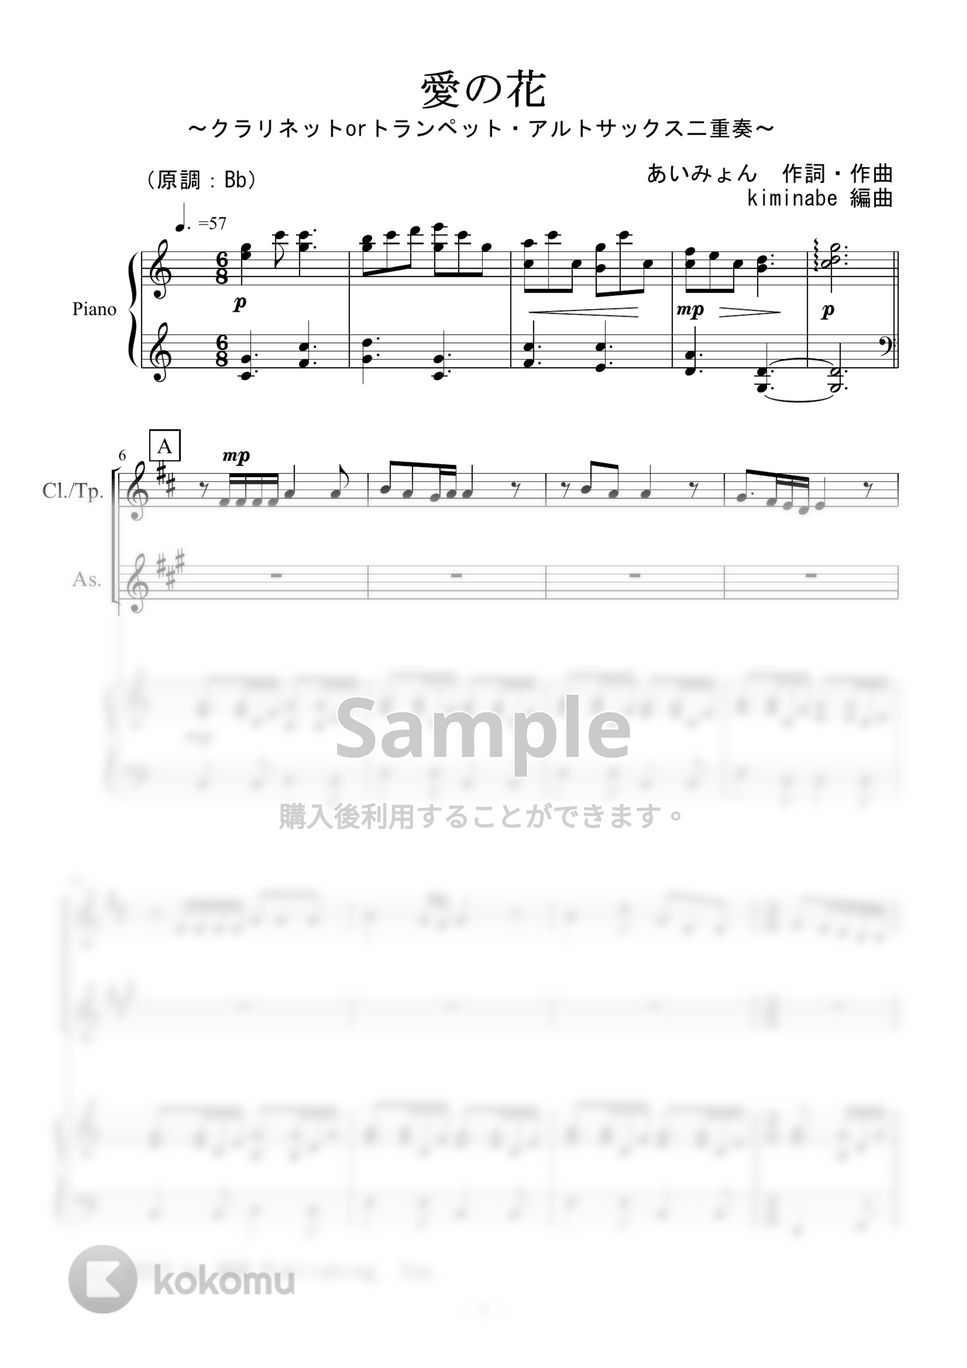 あいみょん - 愛の花 (クラリネットorトランペット・アルトサックス二重奏) by kiminabe